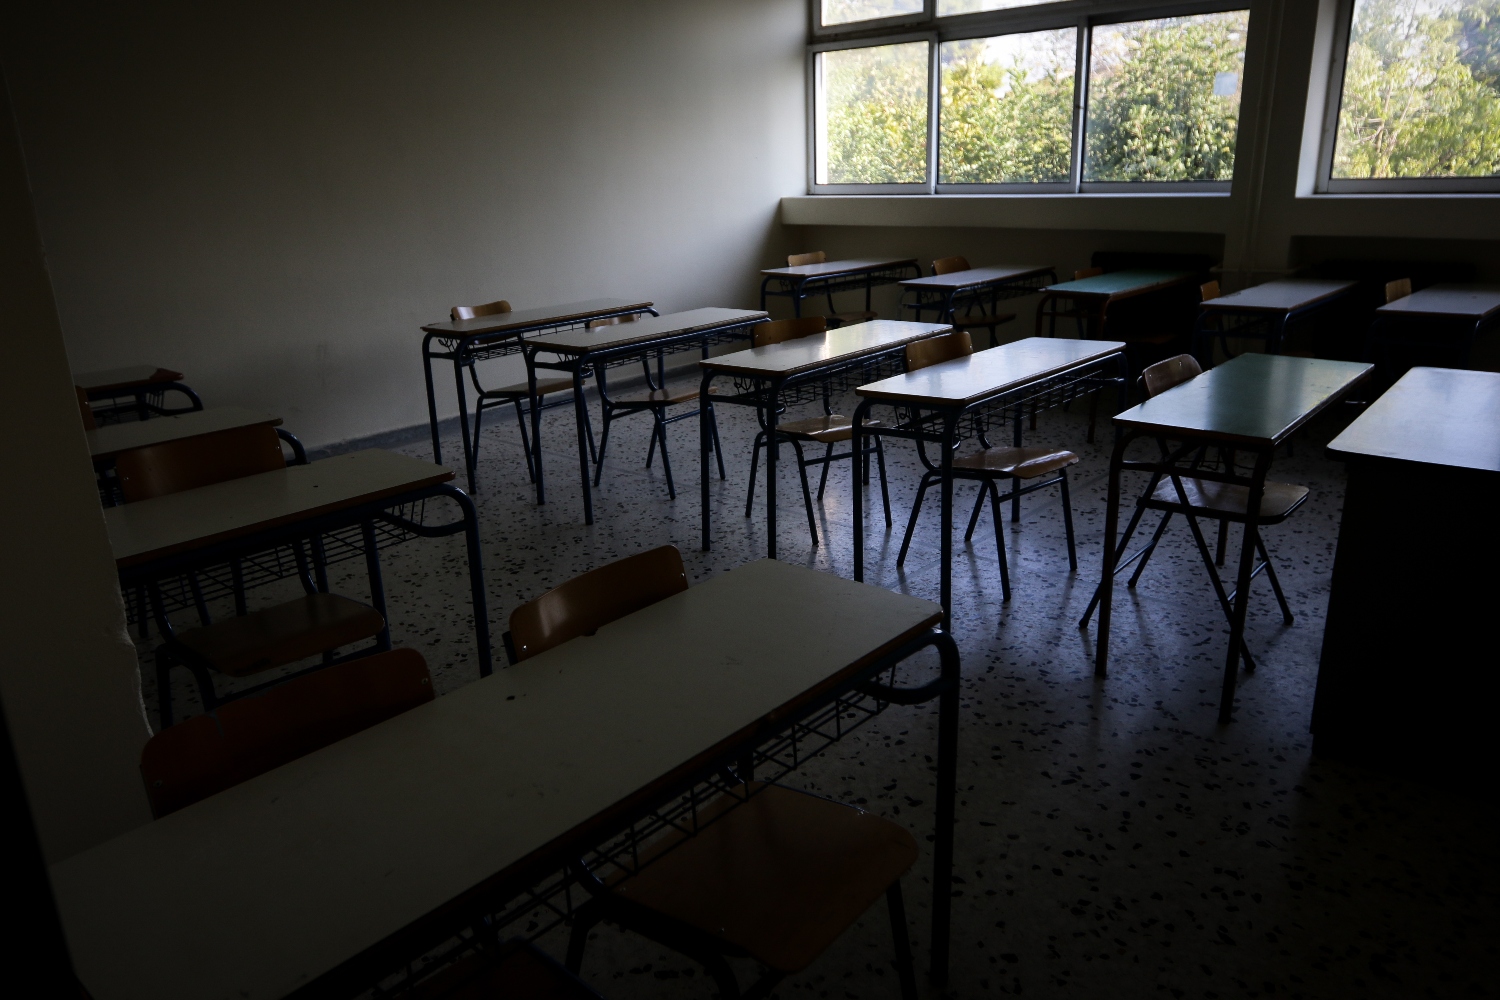 Νέο φρικτό περιστατικό bullying σε σχολείο – «Η βία προστατεύεται», καταγγέλει πατέρας